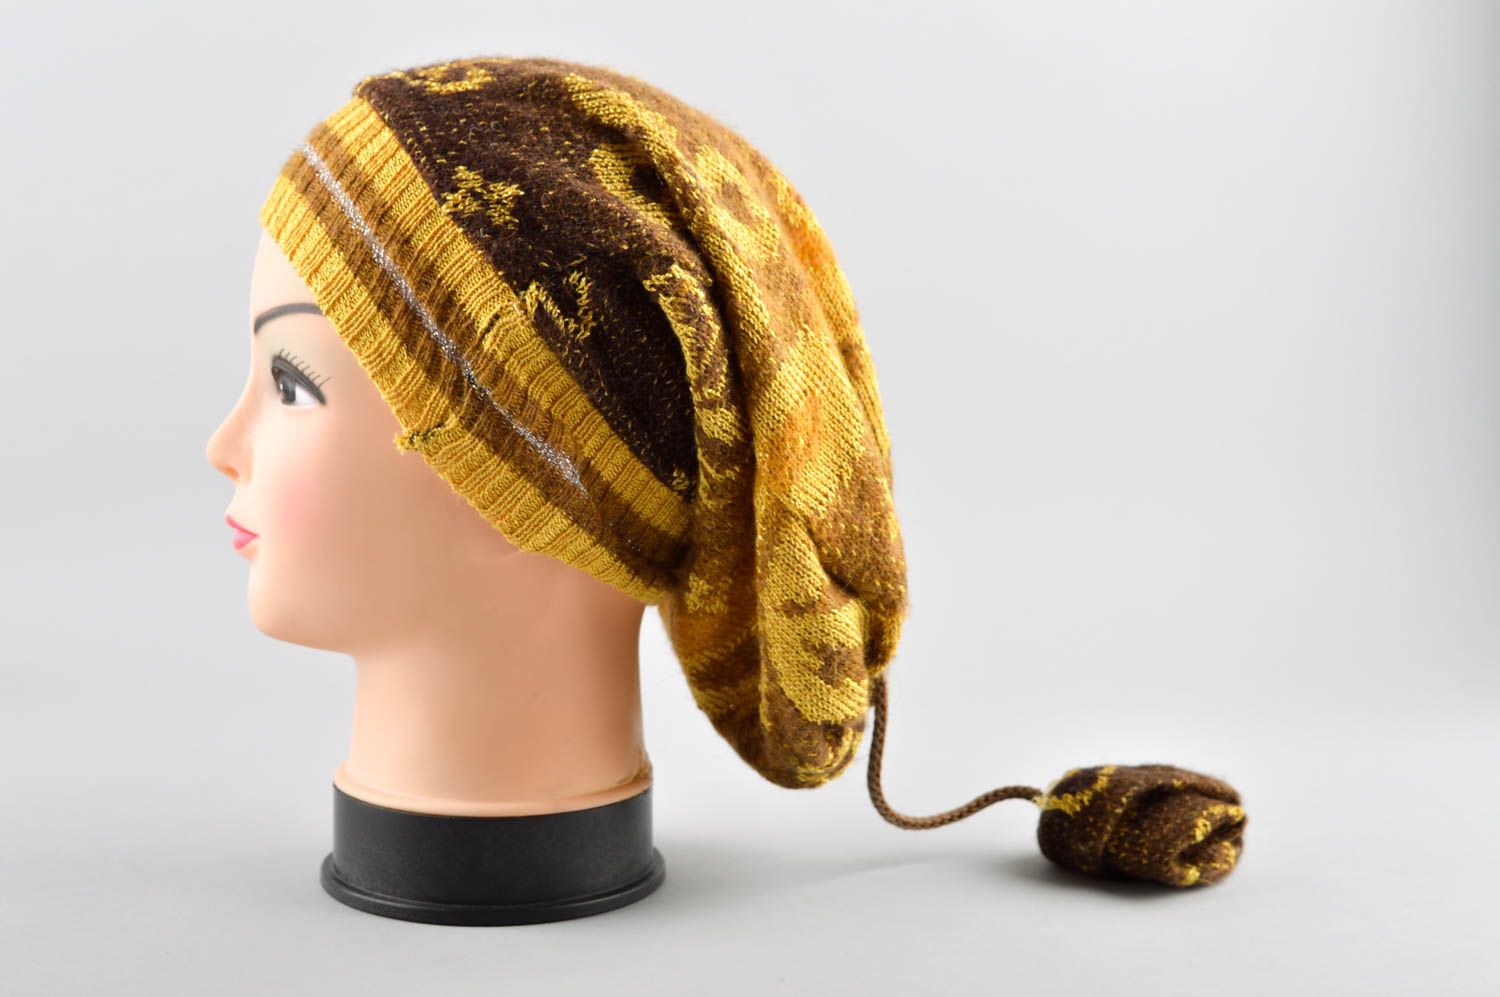 Зимняя шапка ручной работы зимняя женская шапка головной убор стильный авторский фото 2